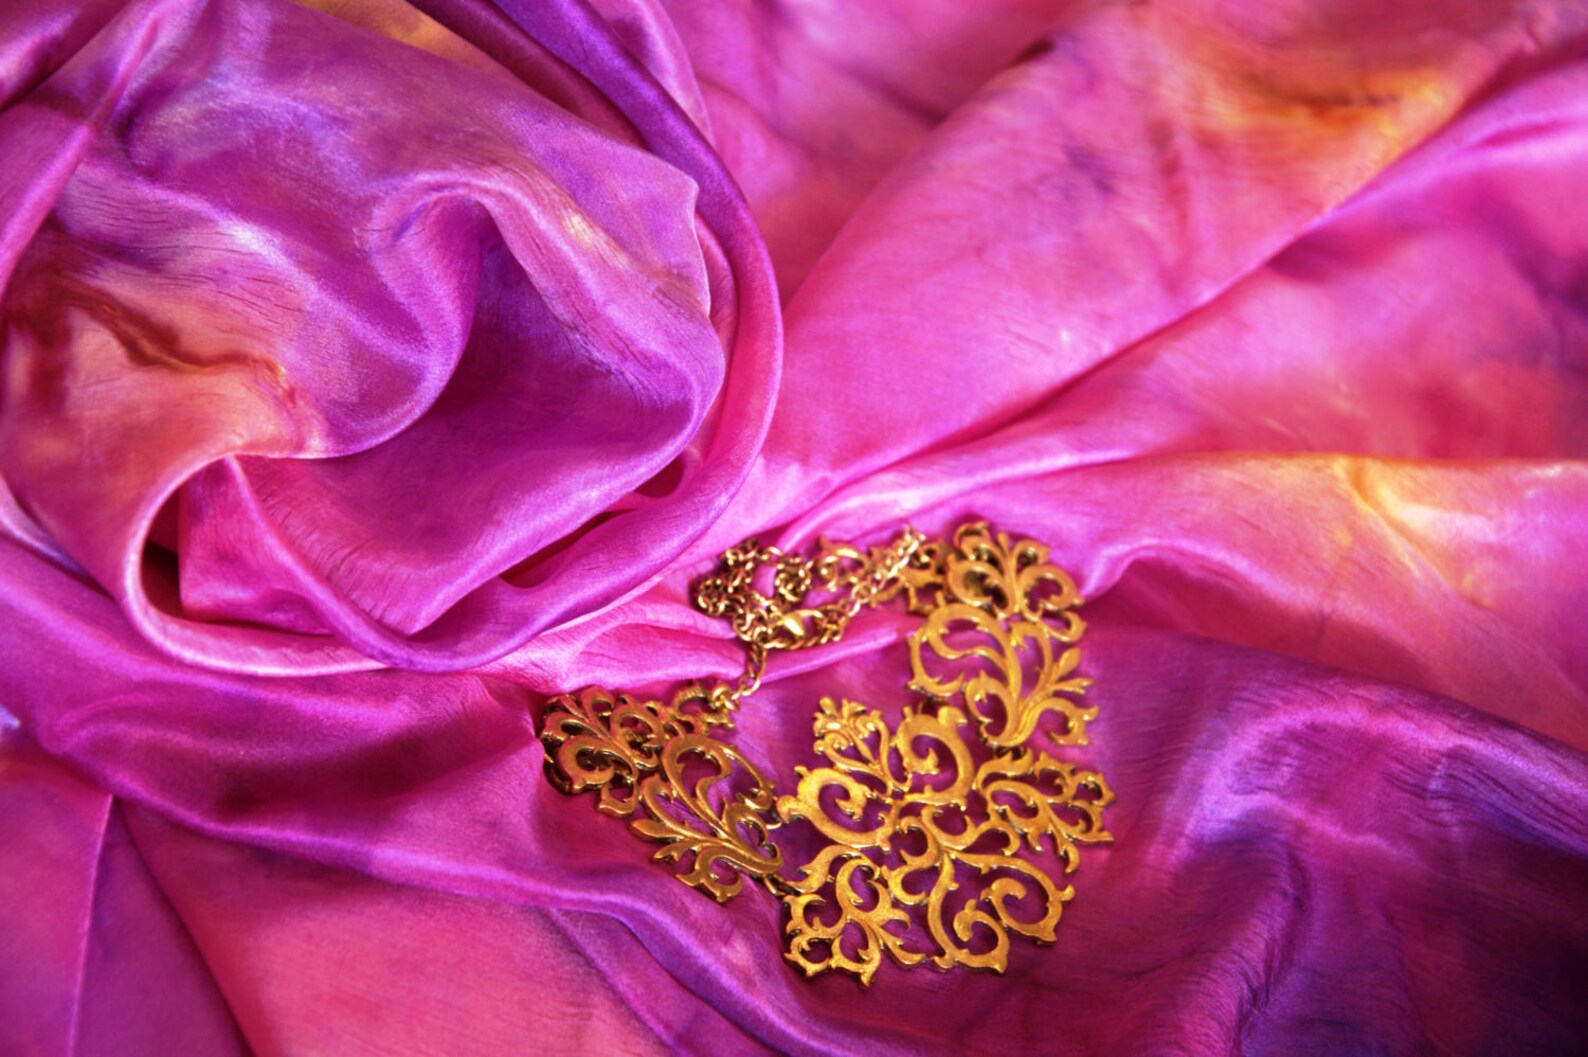 Natural silk. Шелковая туника из натурального шелка. Шелковые ткани Узбекистана. Шитье сиреневые. Ткань фантазия.